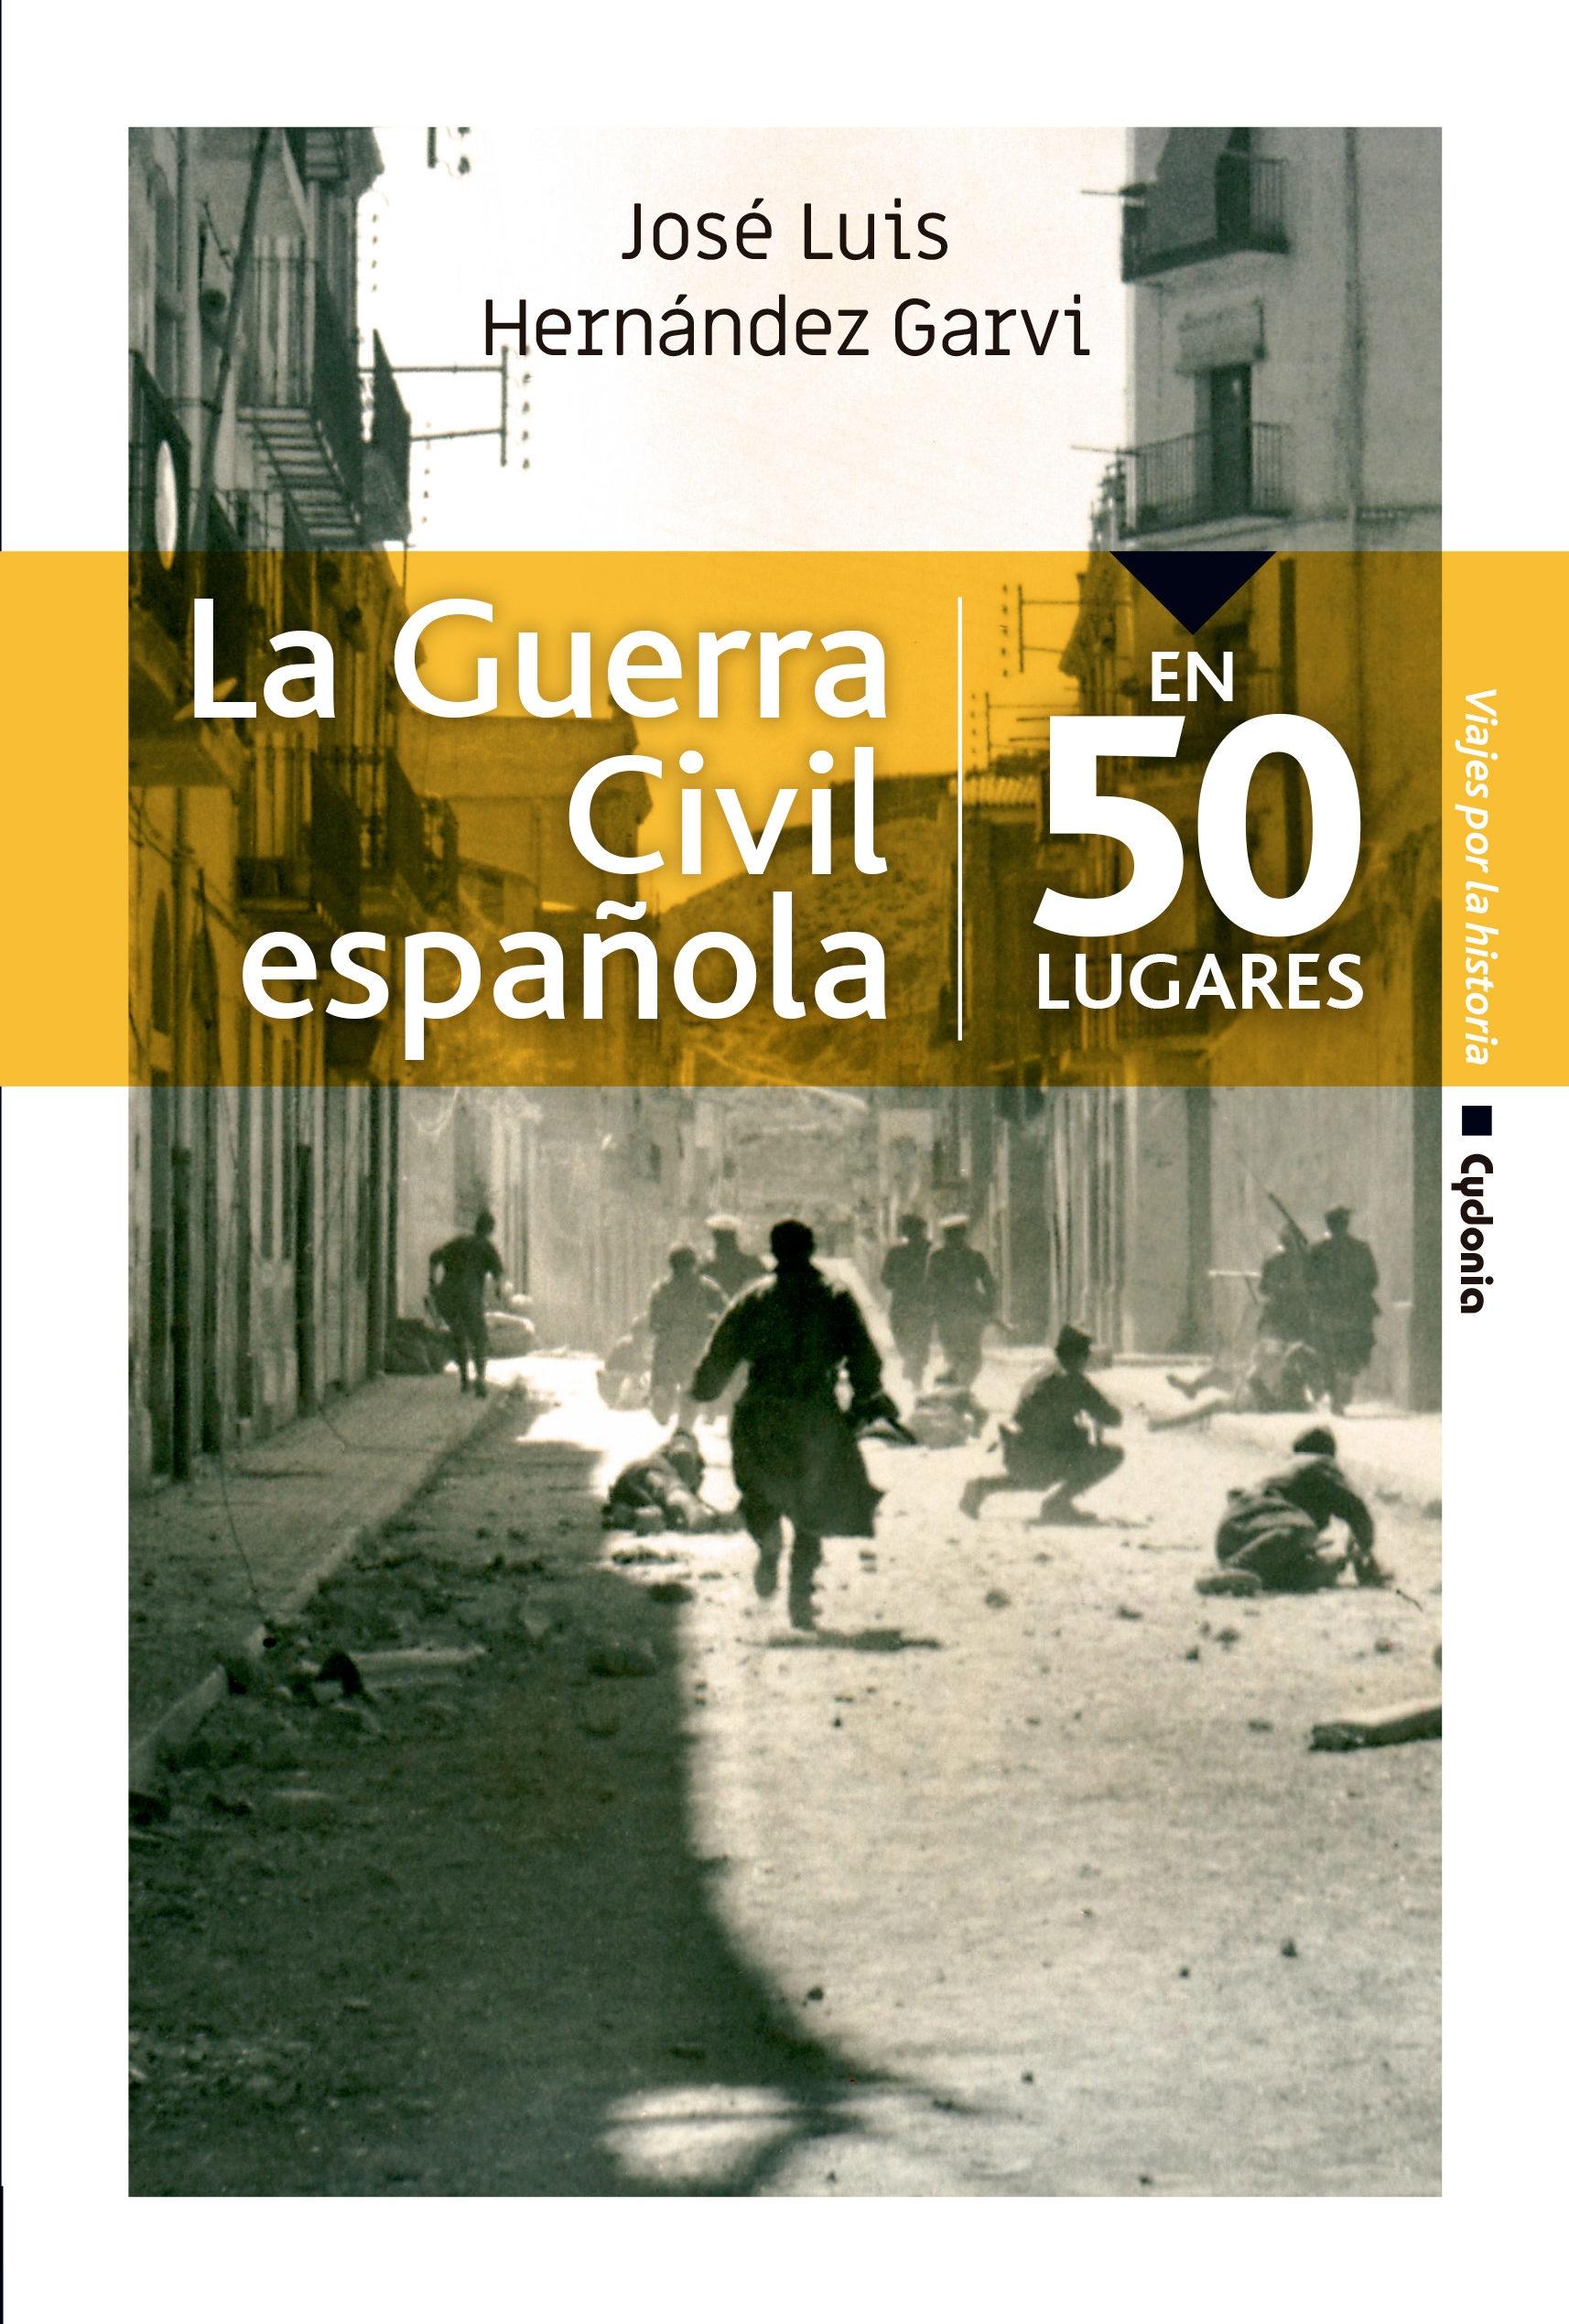 La Guerra Civil española "En 50 lugares". 